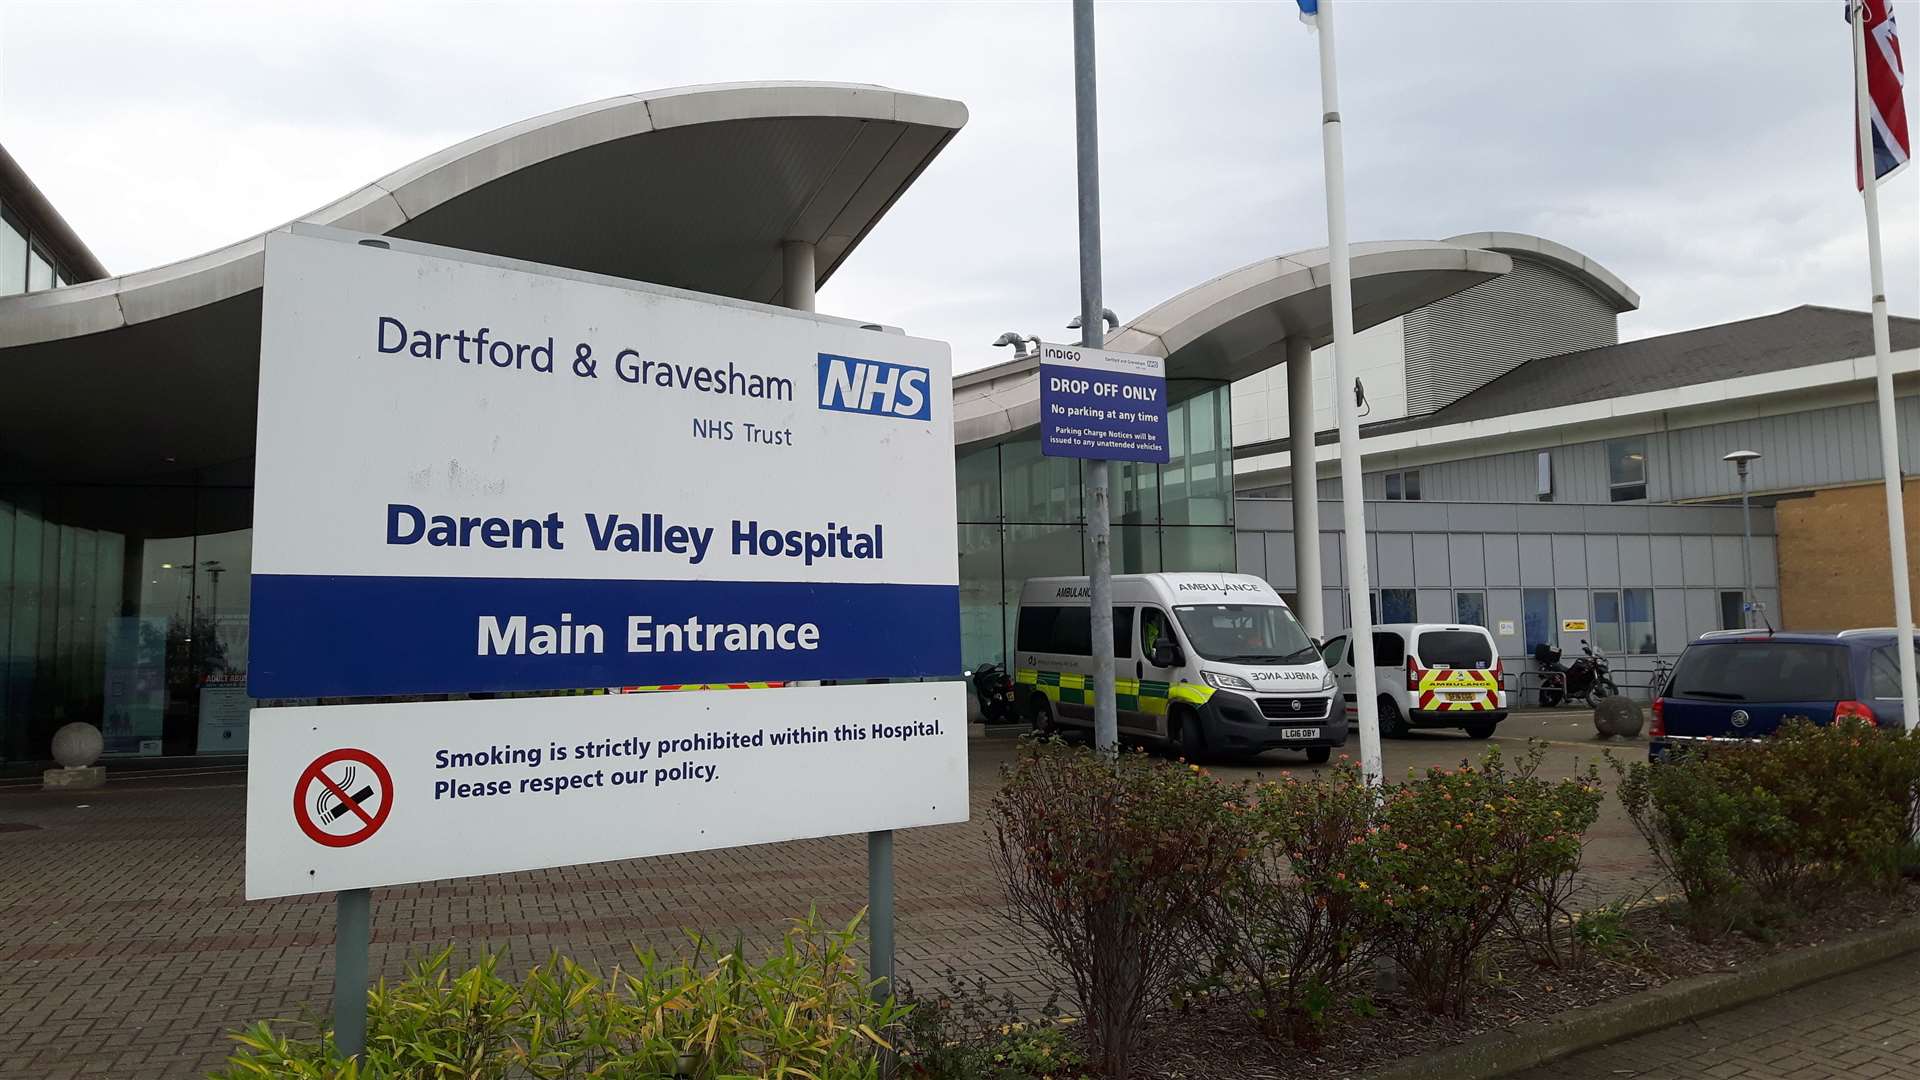 Darent Valley Hospital, Dartford